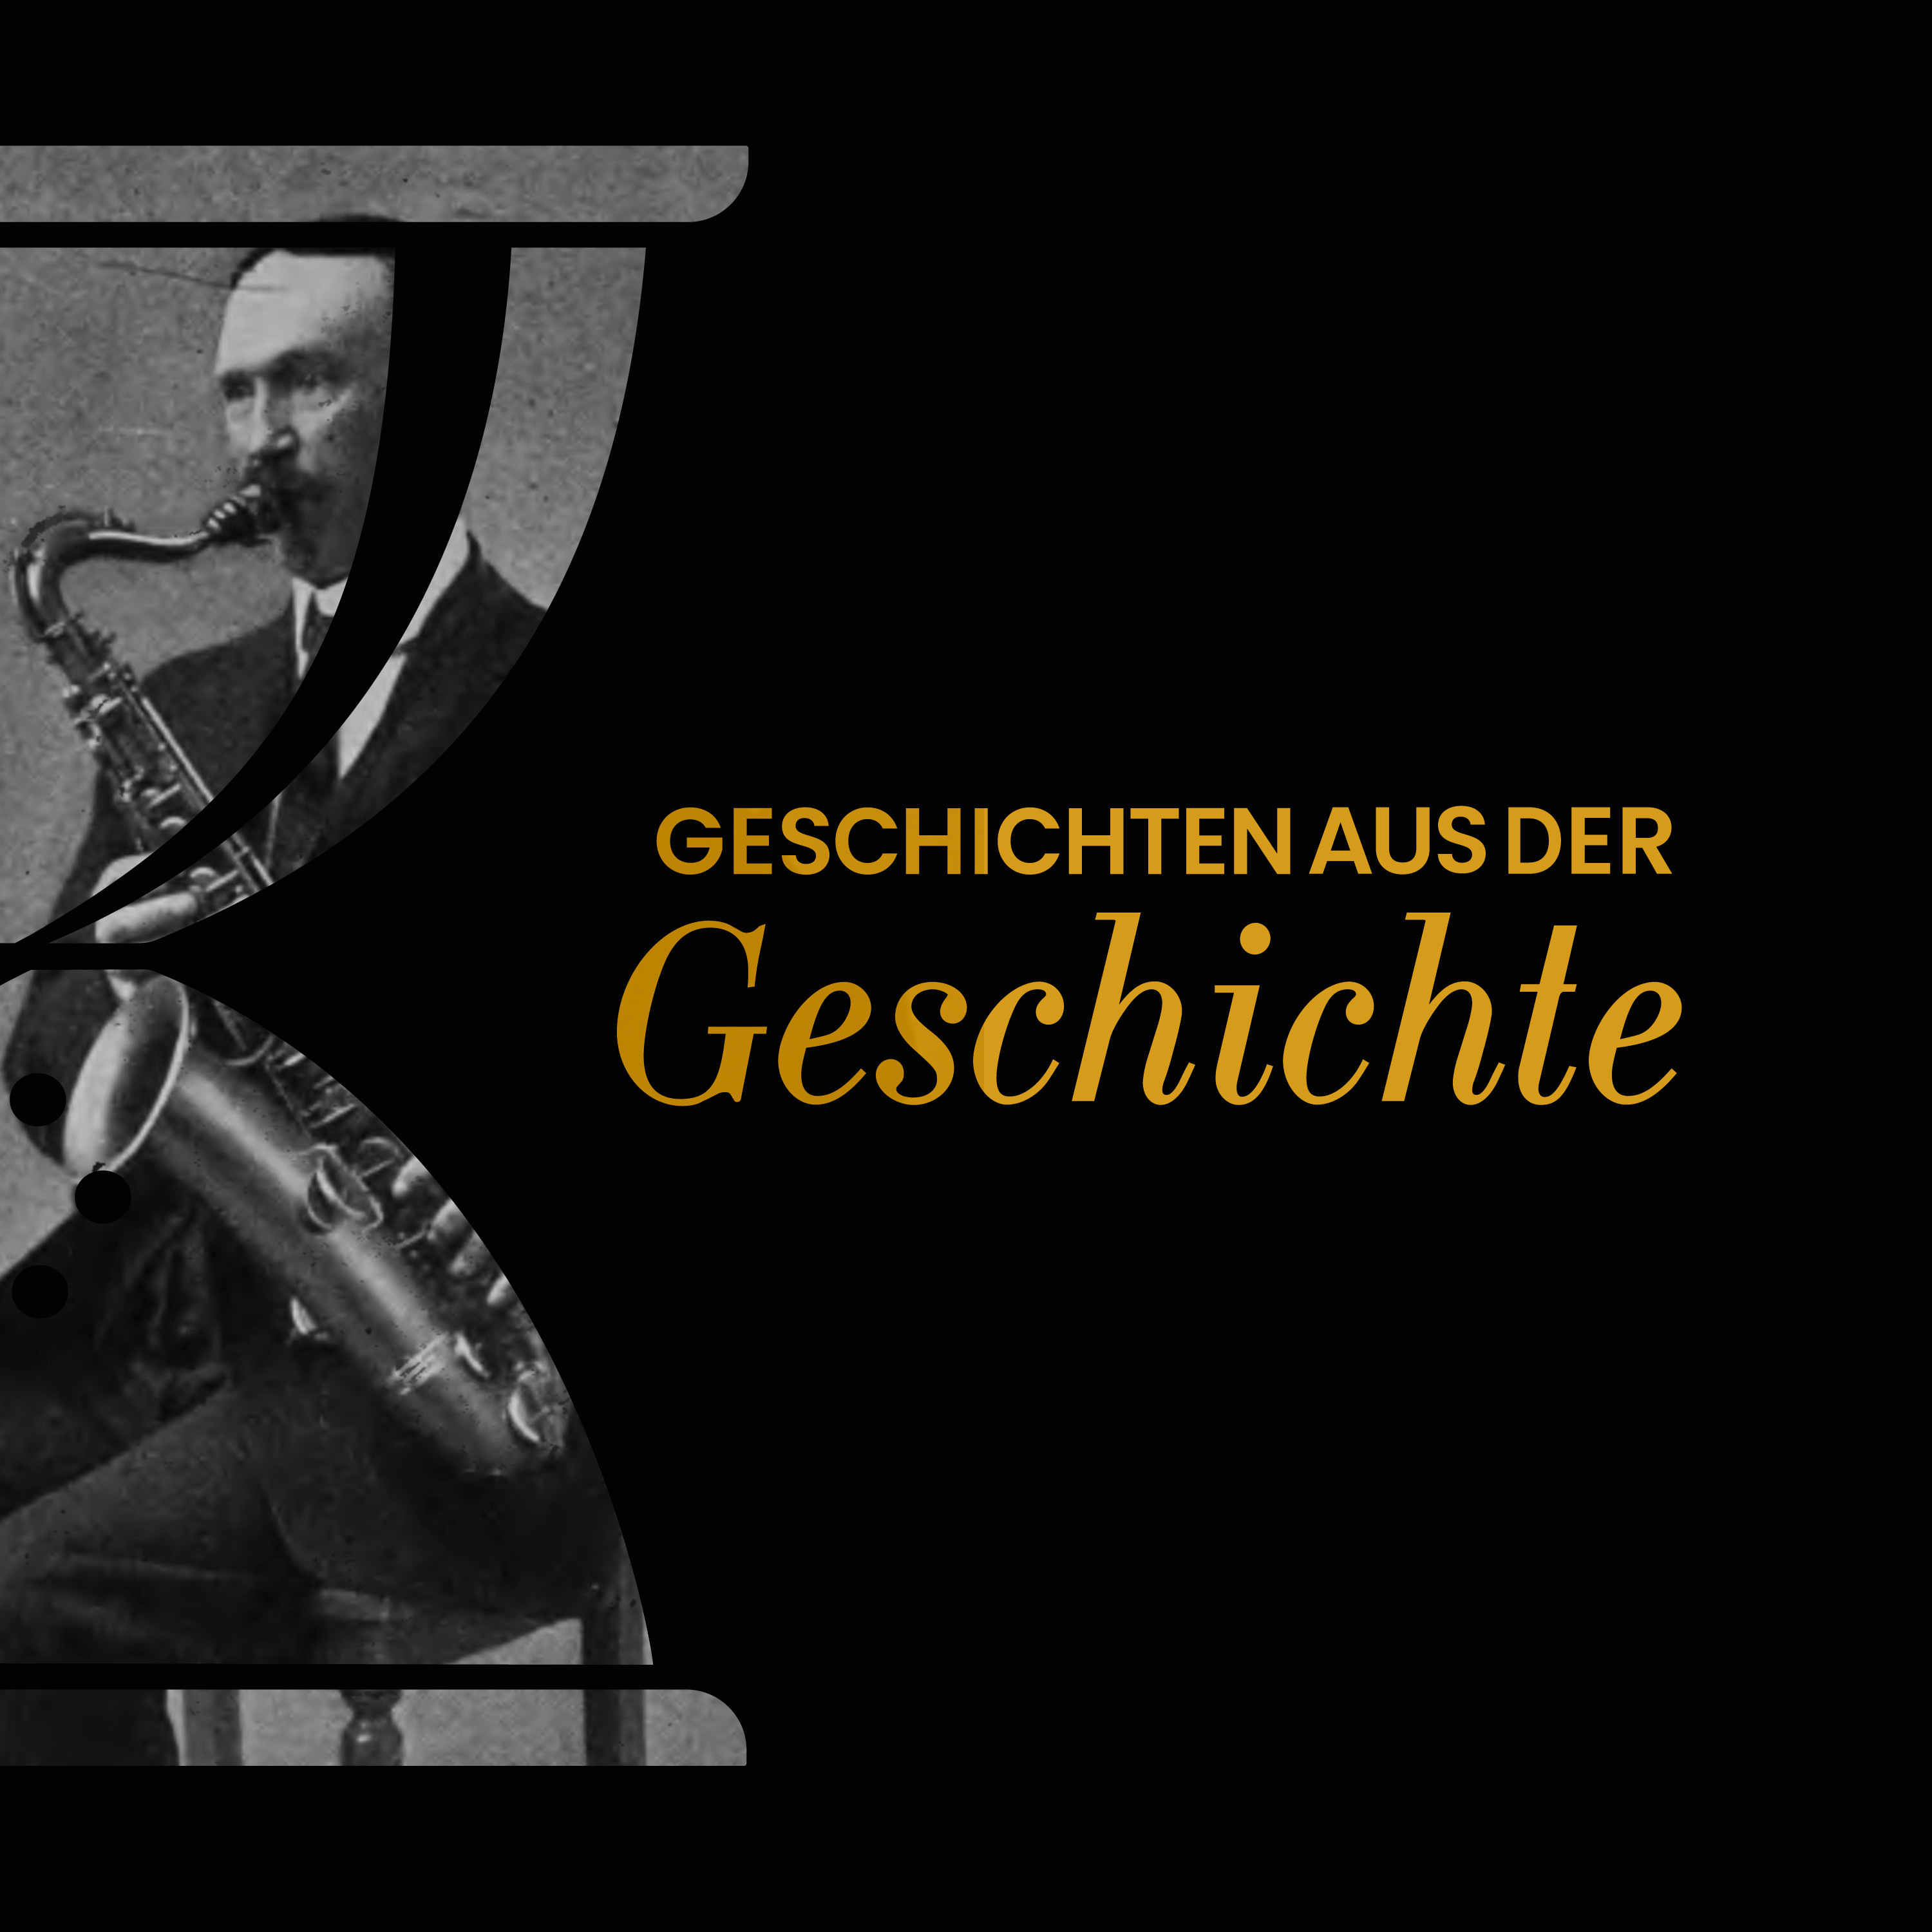 GAG351: Die Erfindung des Saxophons - Aufstieg und Fall des Adolphe Sax